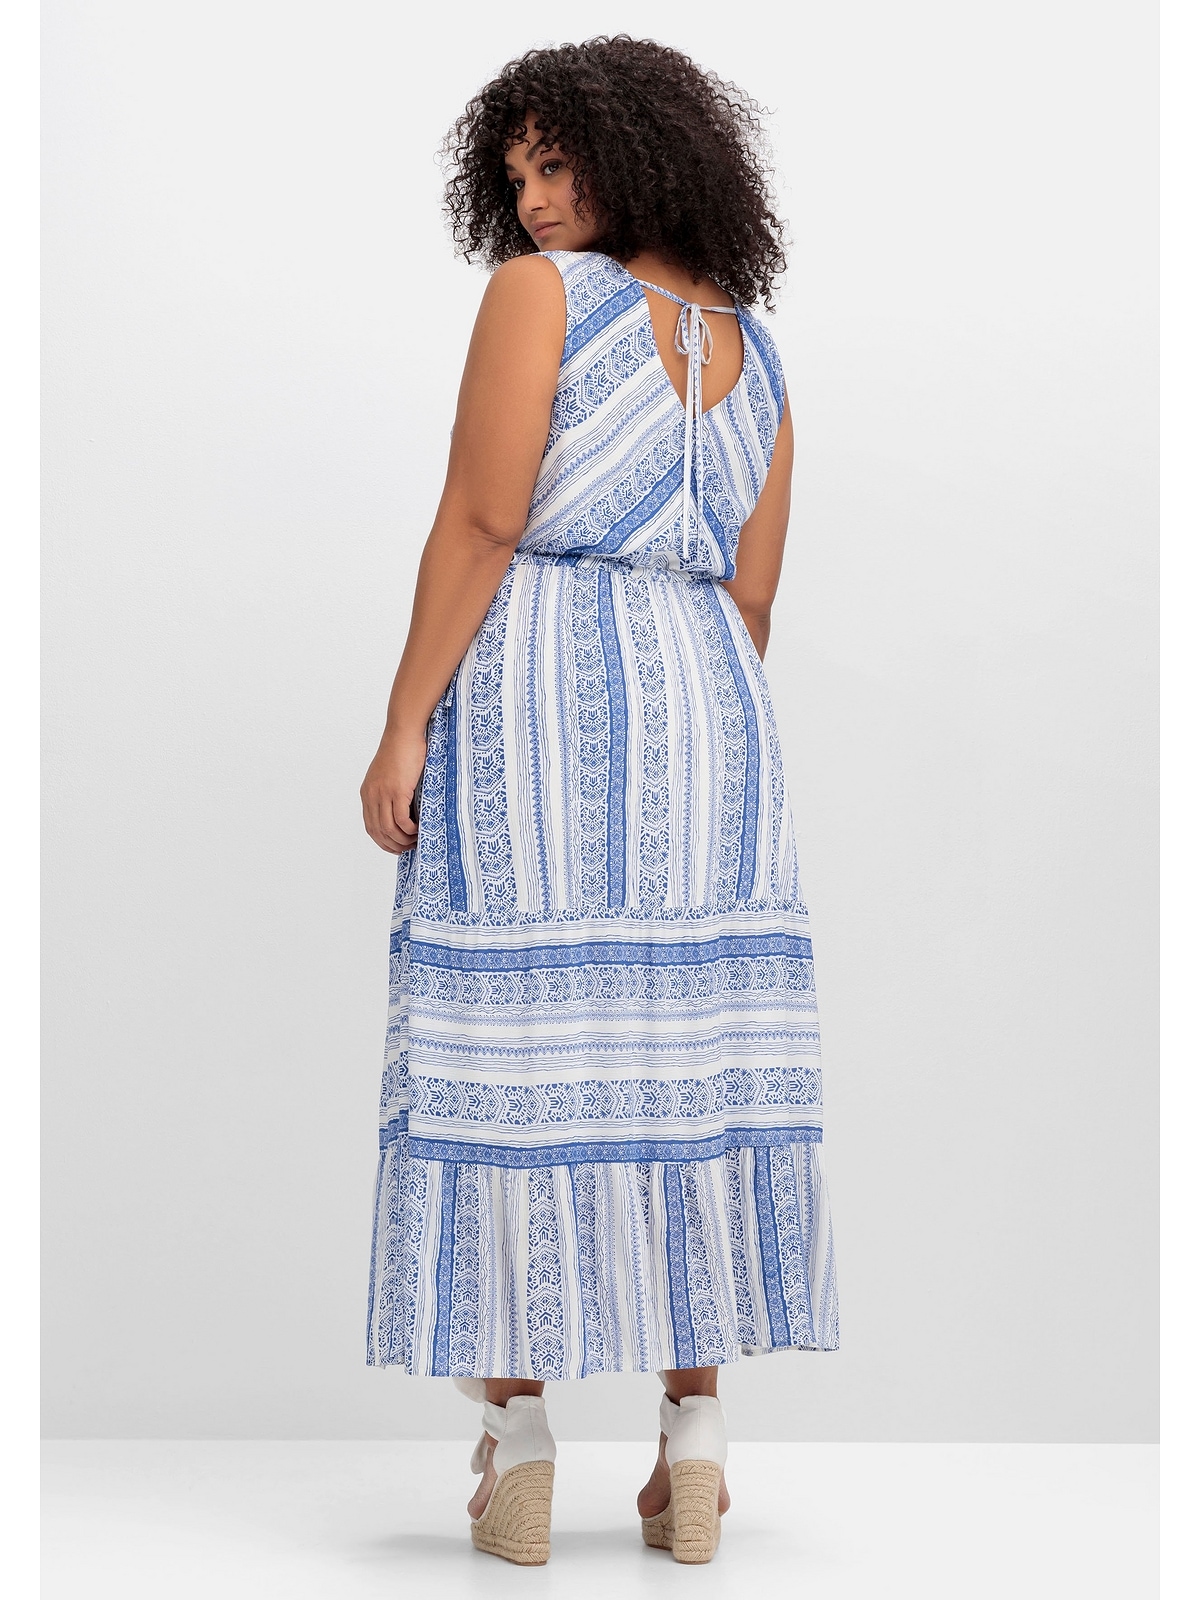 sheego by | BAUR bestellen Sommerkleid mit Joe Browns Alloverdruck online »Große Größen«